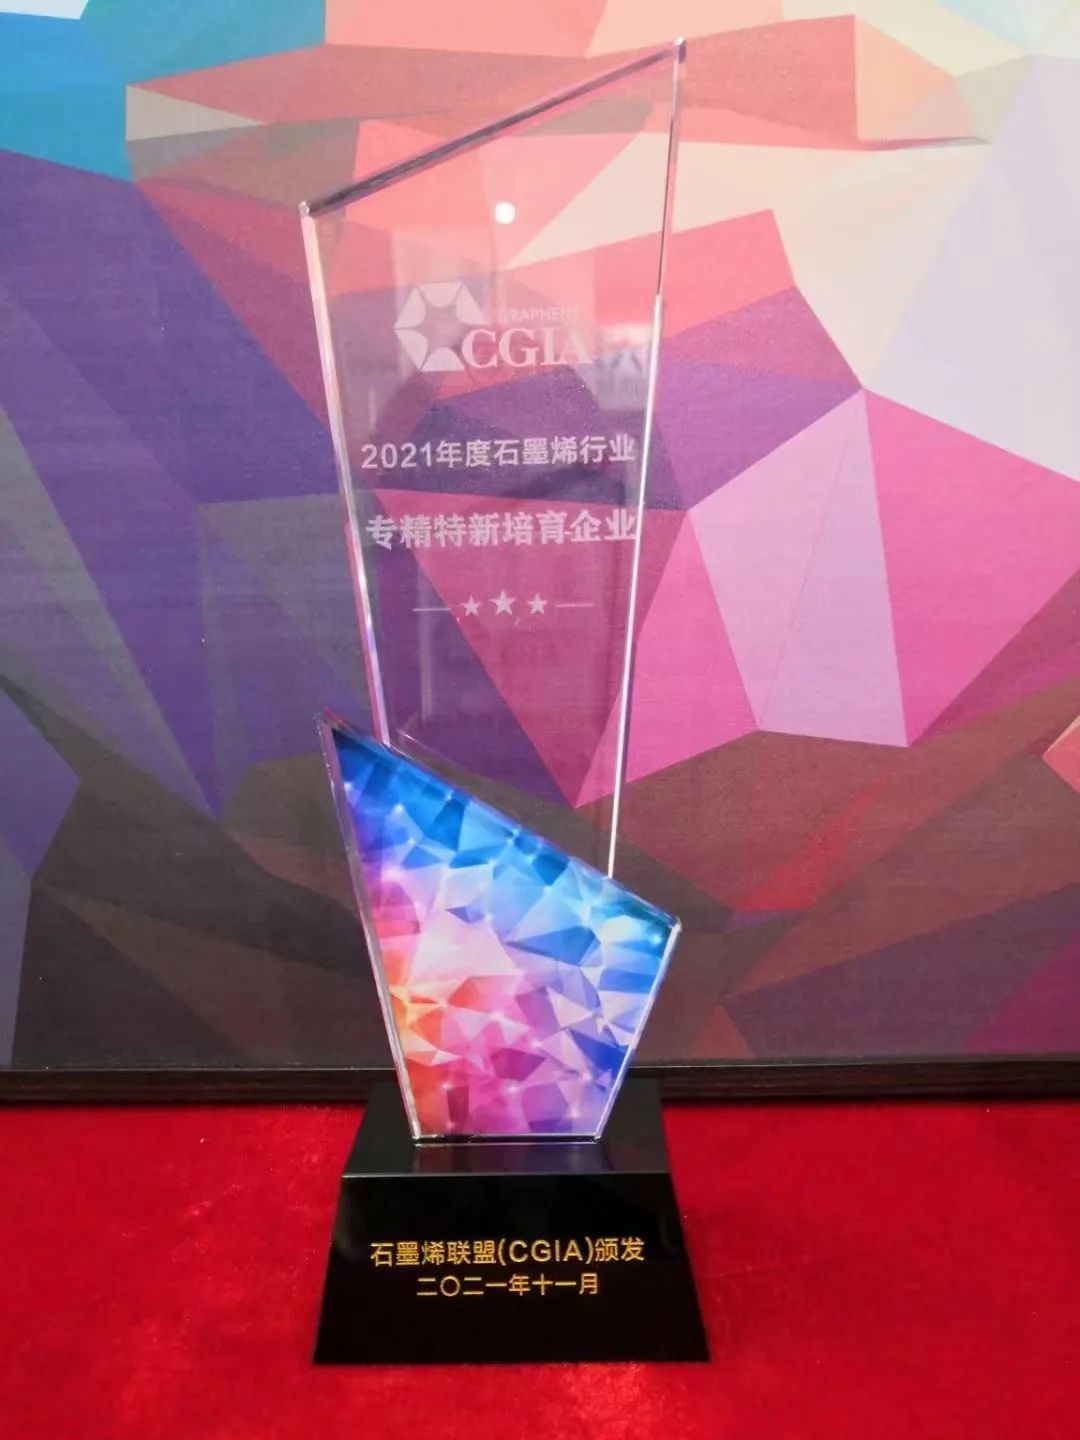 二维碳素受邀参加“中国国际石墨烯创新大会”，荣获多项行业荣誉